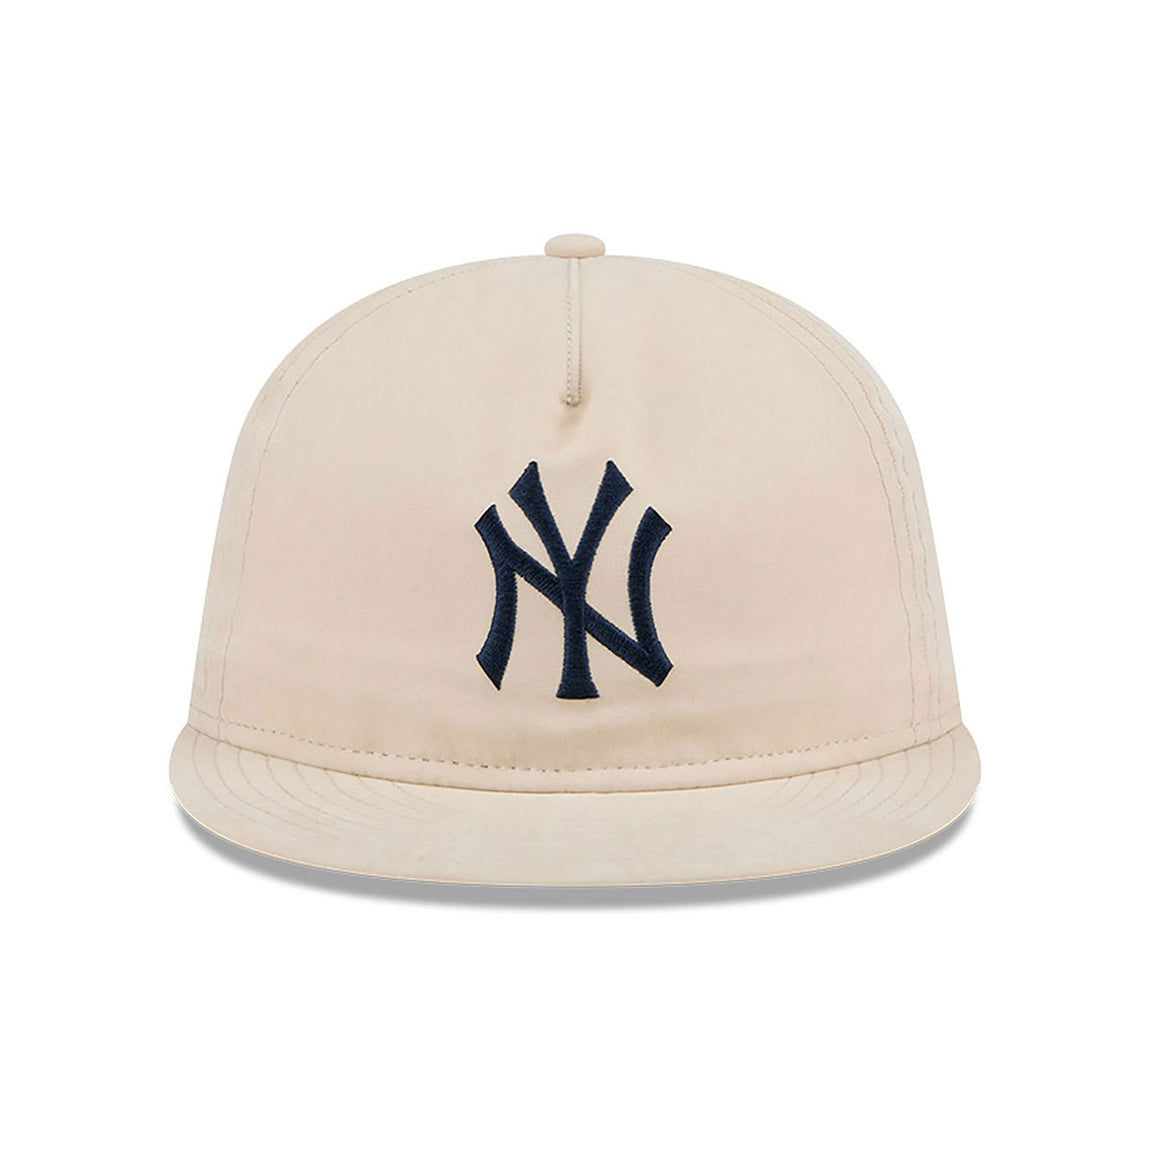 New Era 9FIFTY New York Yankees Brushed Nylon Strapback Cap (Cream) - New Era 9FIFTY New York Yankees Brushed Nylon Strapback Cap (Cream) - 